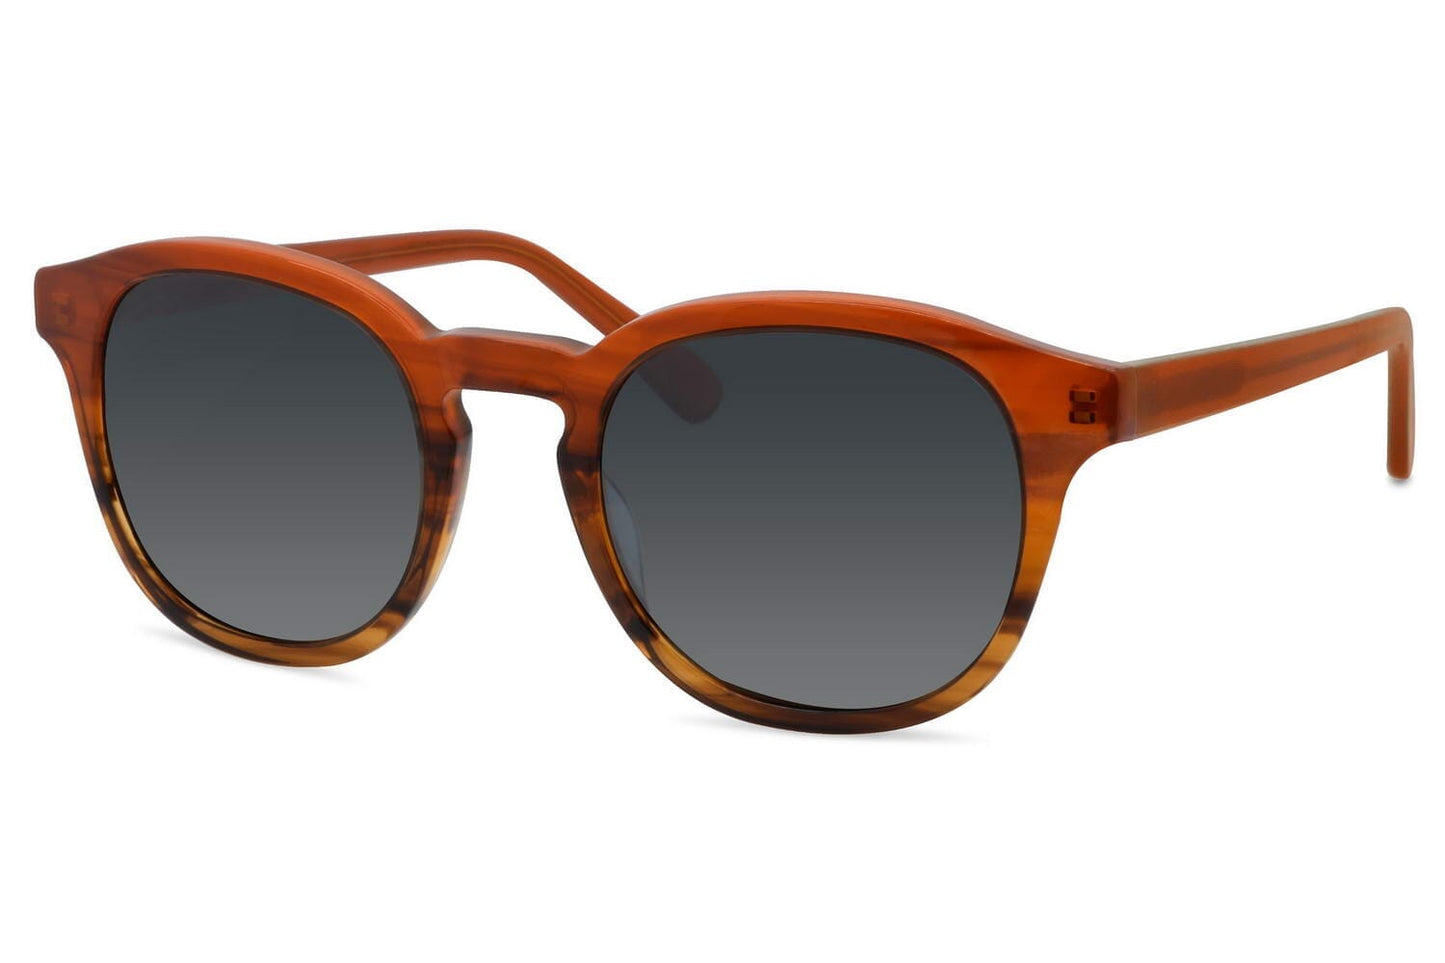 Round 70's sunglasses. Black lenses. Keyhole nose bridge look. Wood effect brown colour frames.